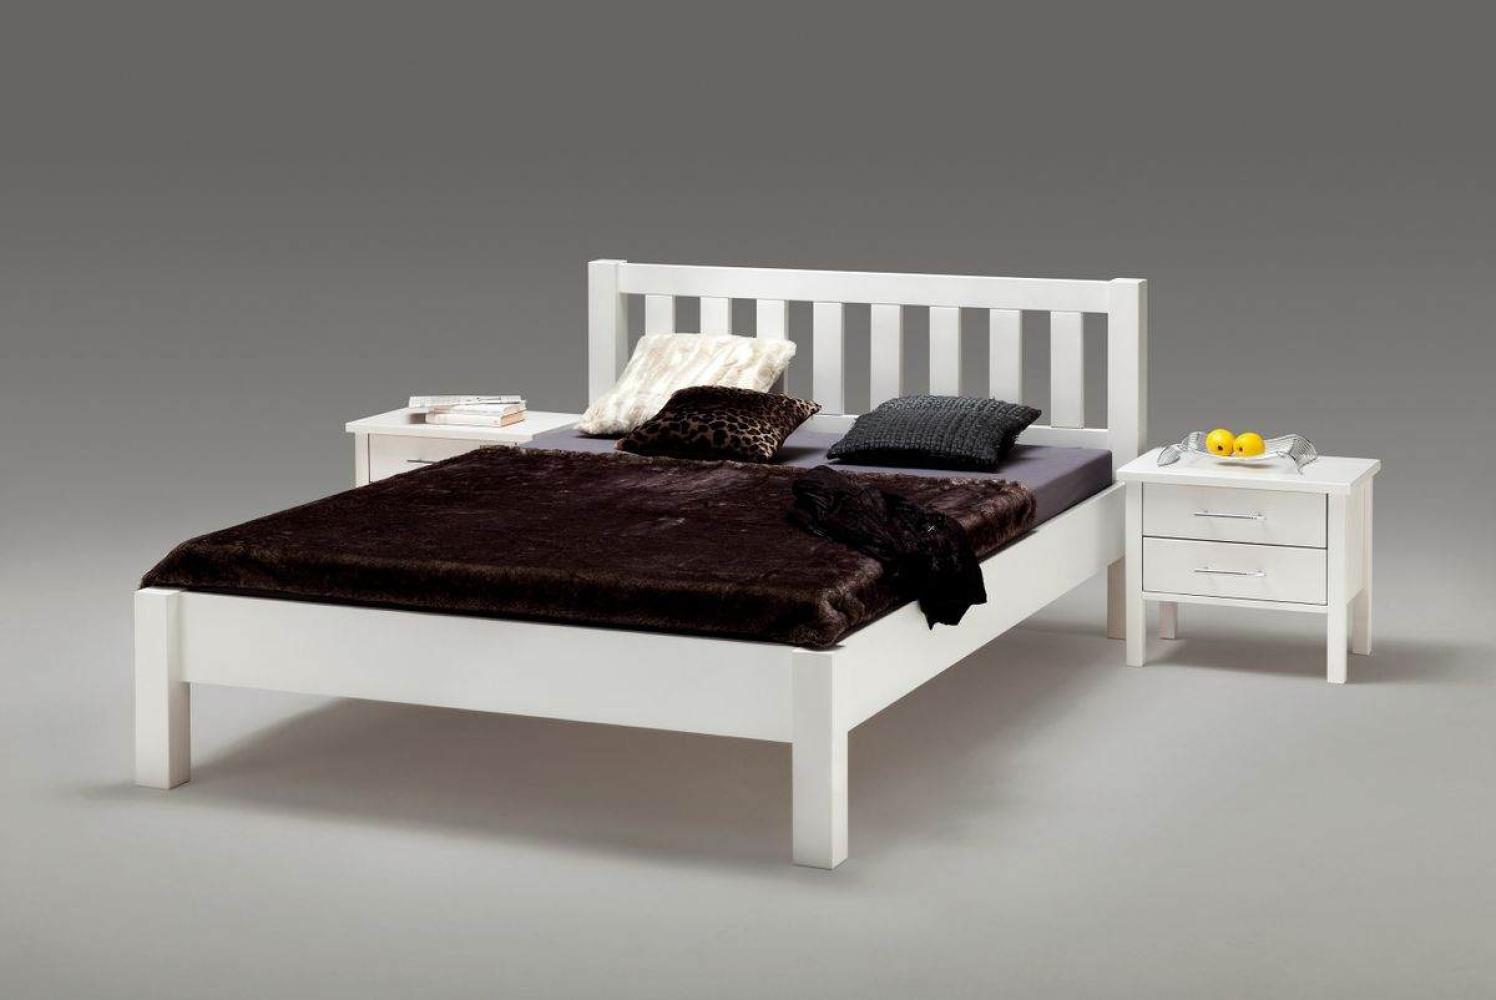 Ben' Bett aus massiver Buche, weiß, 140x200 cm Bild 1